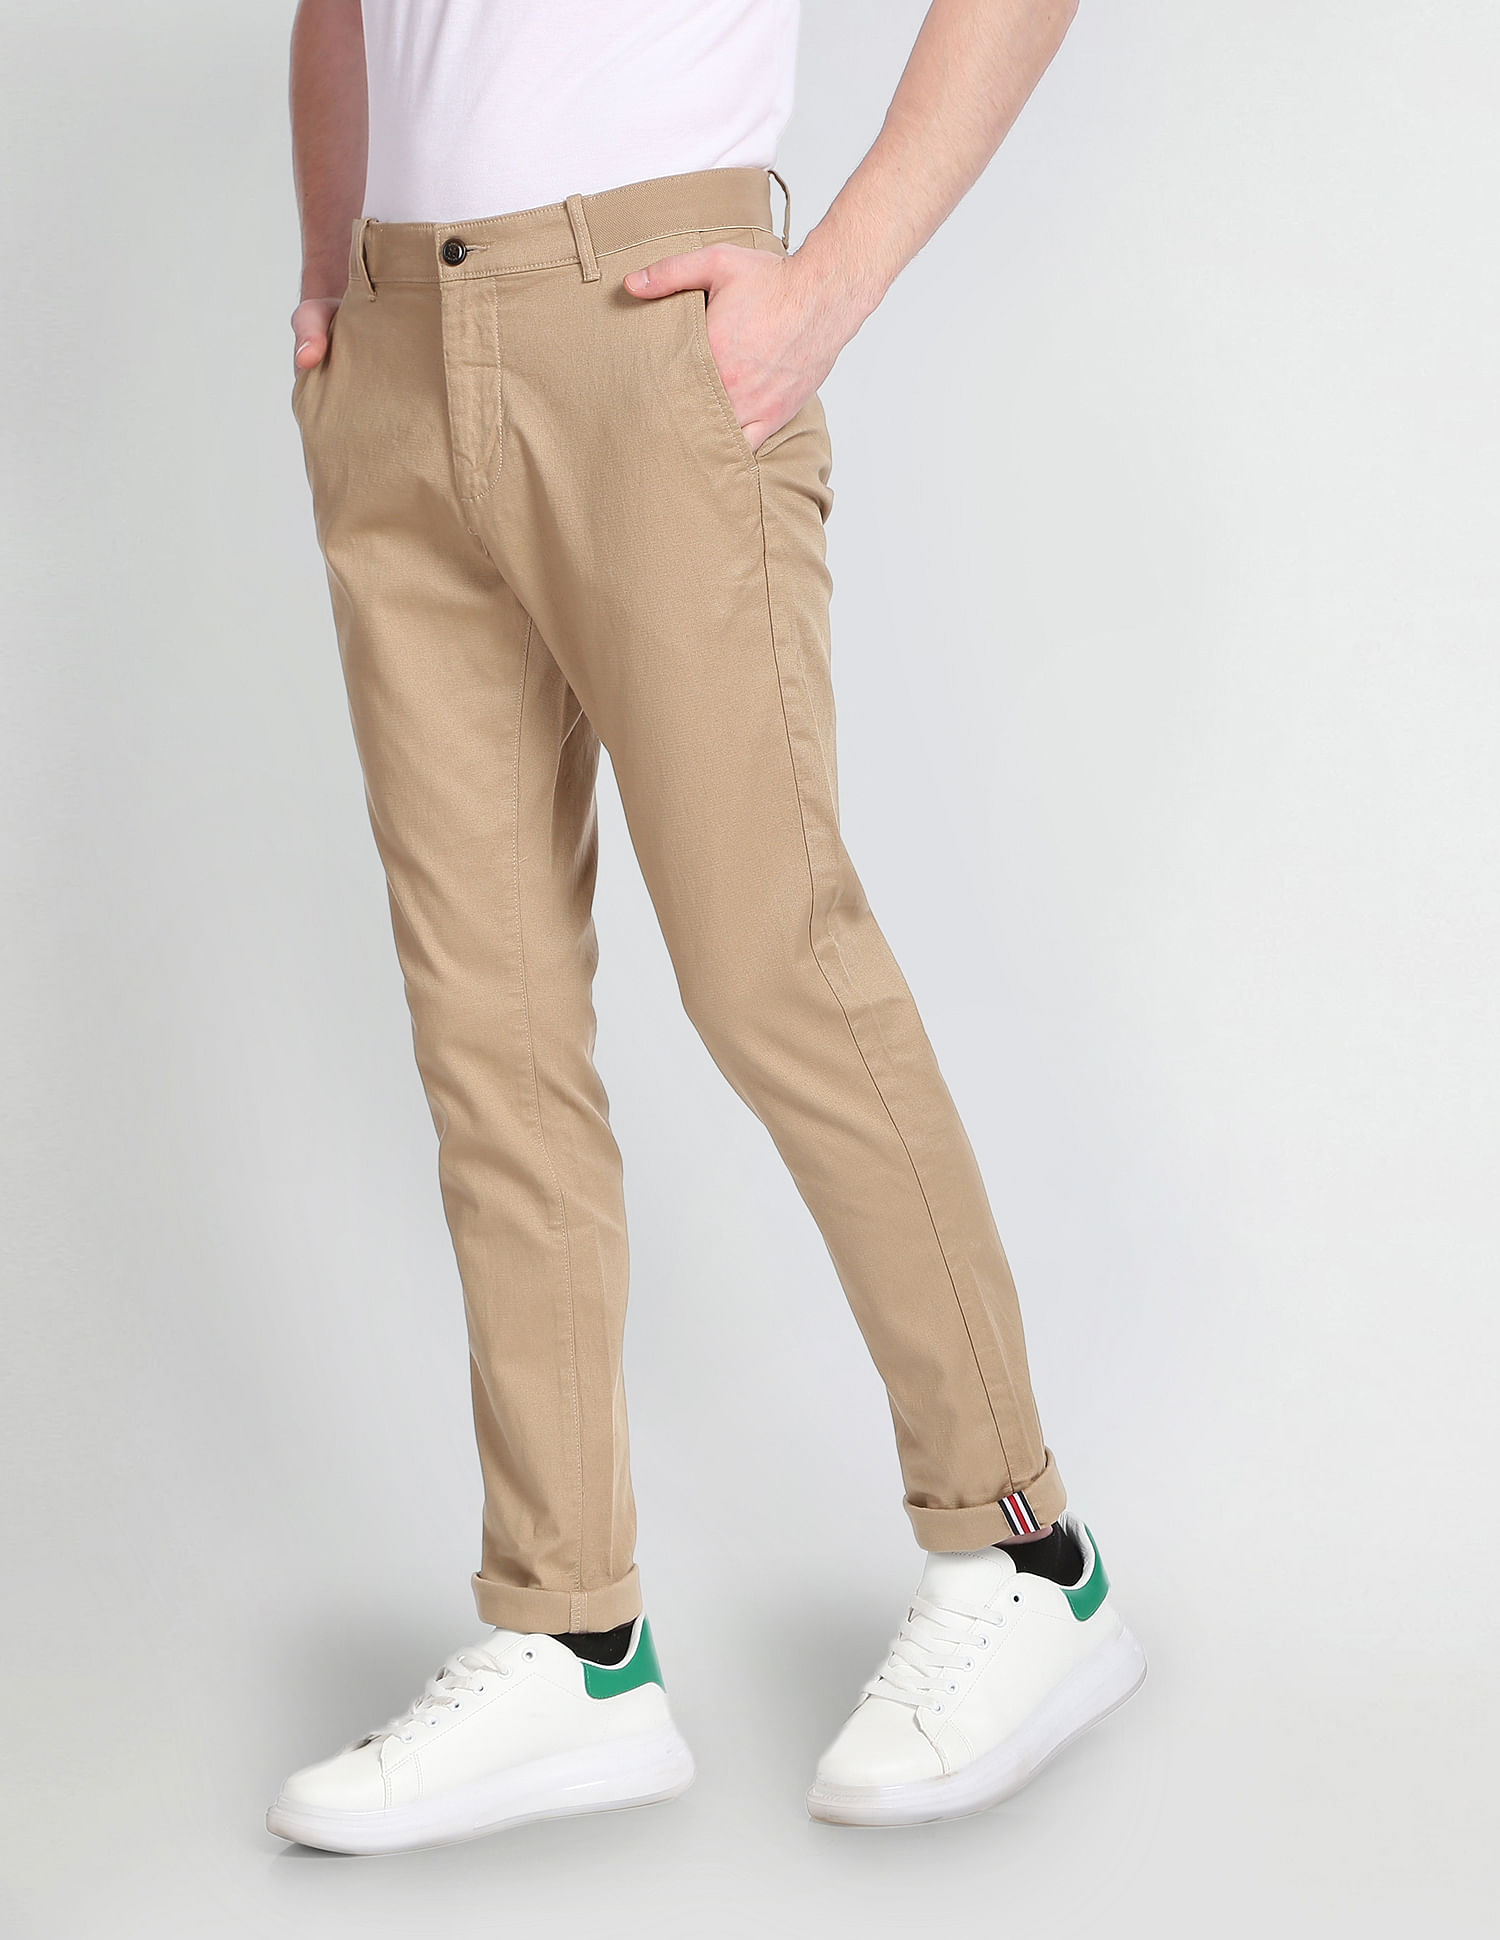 Buy Arrow Men's Regular Pants (ANAFTR2275_Light Grey at Amazon.in